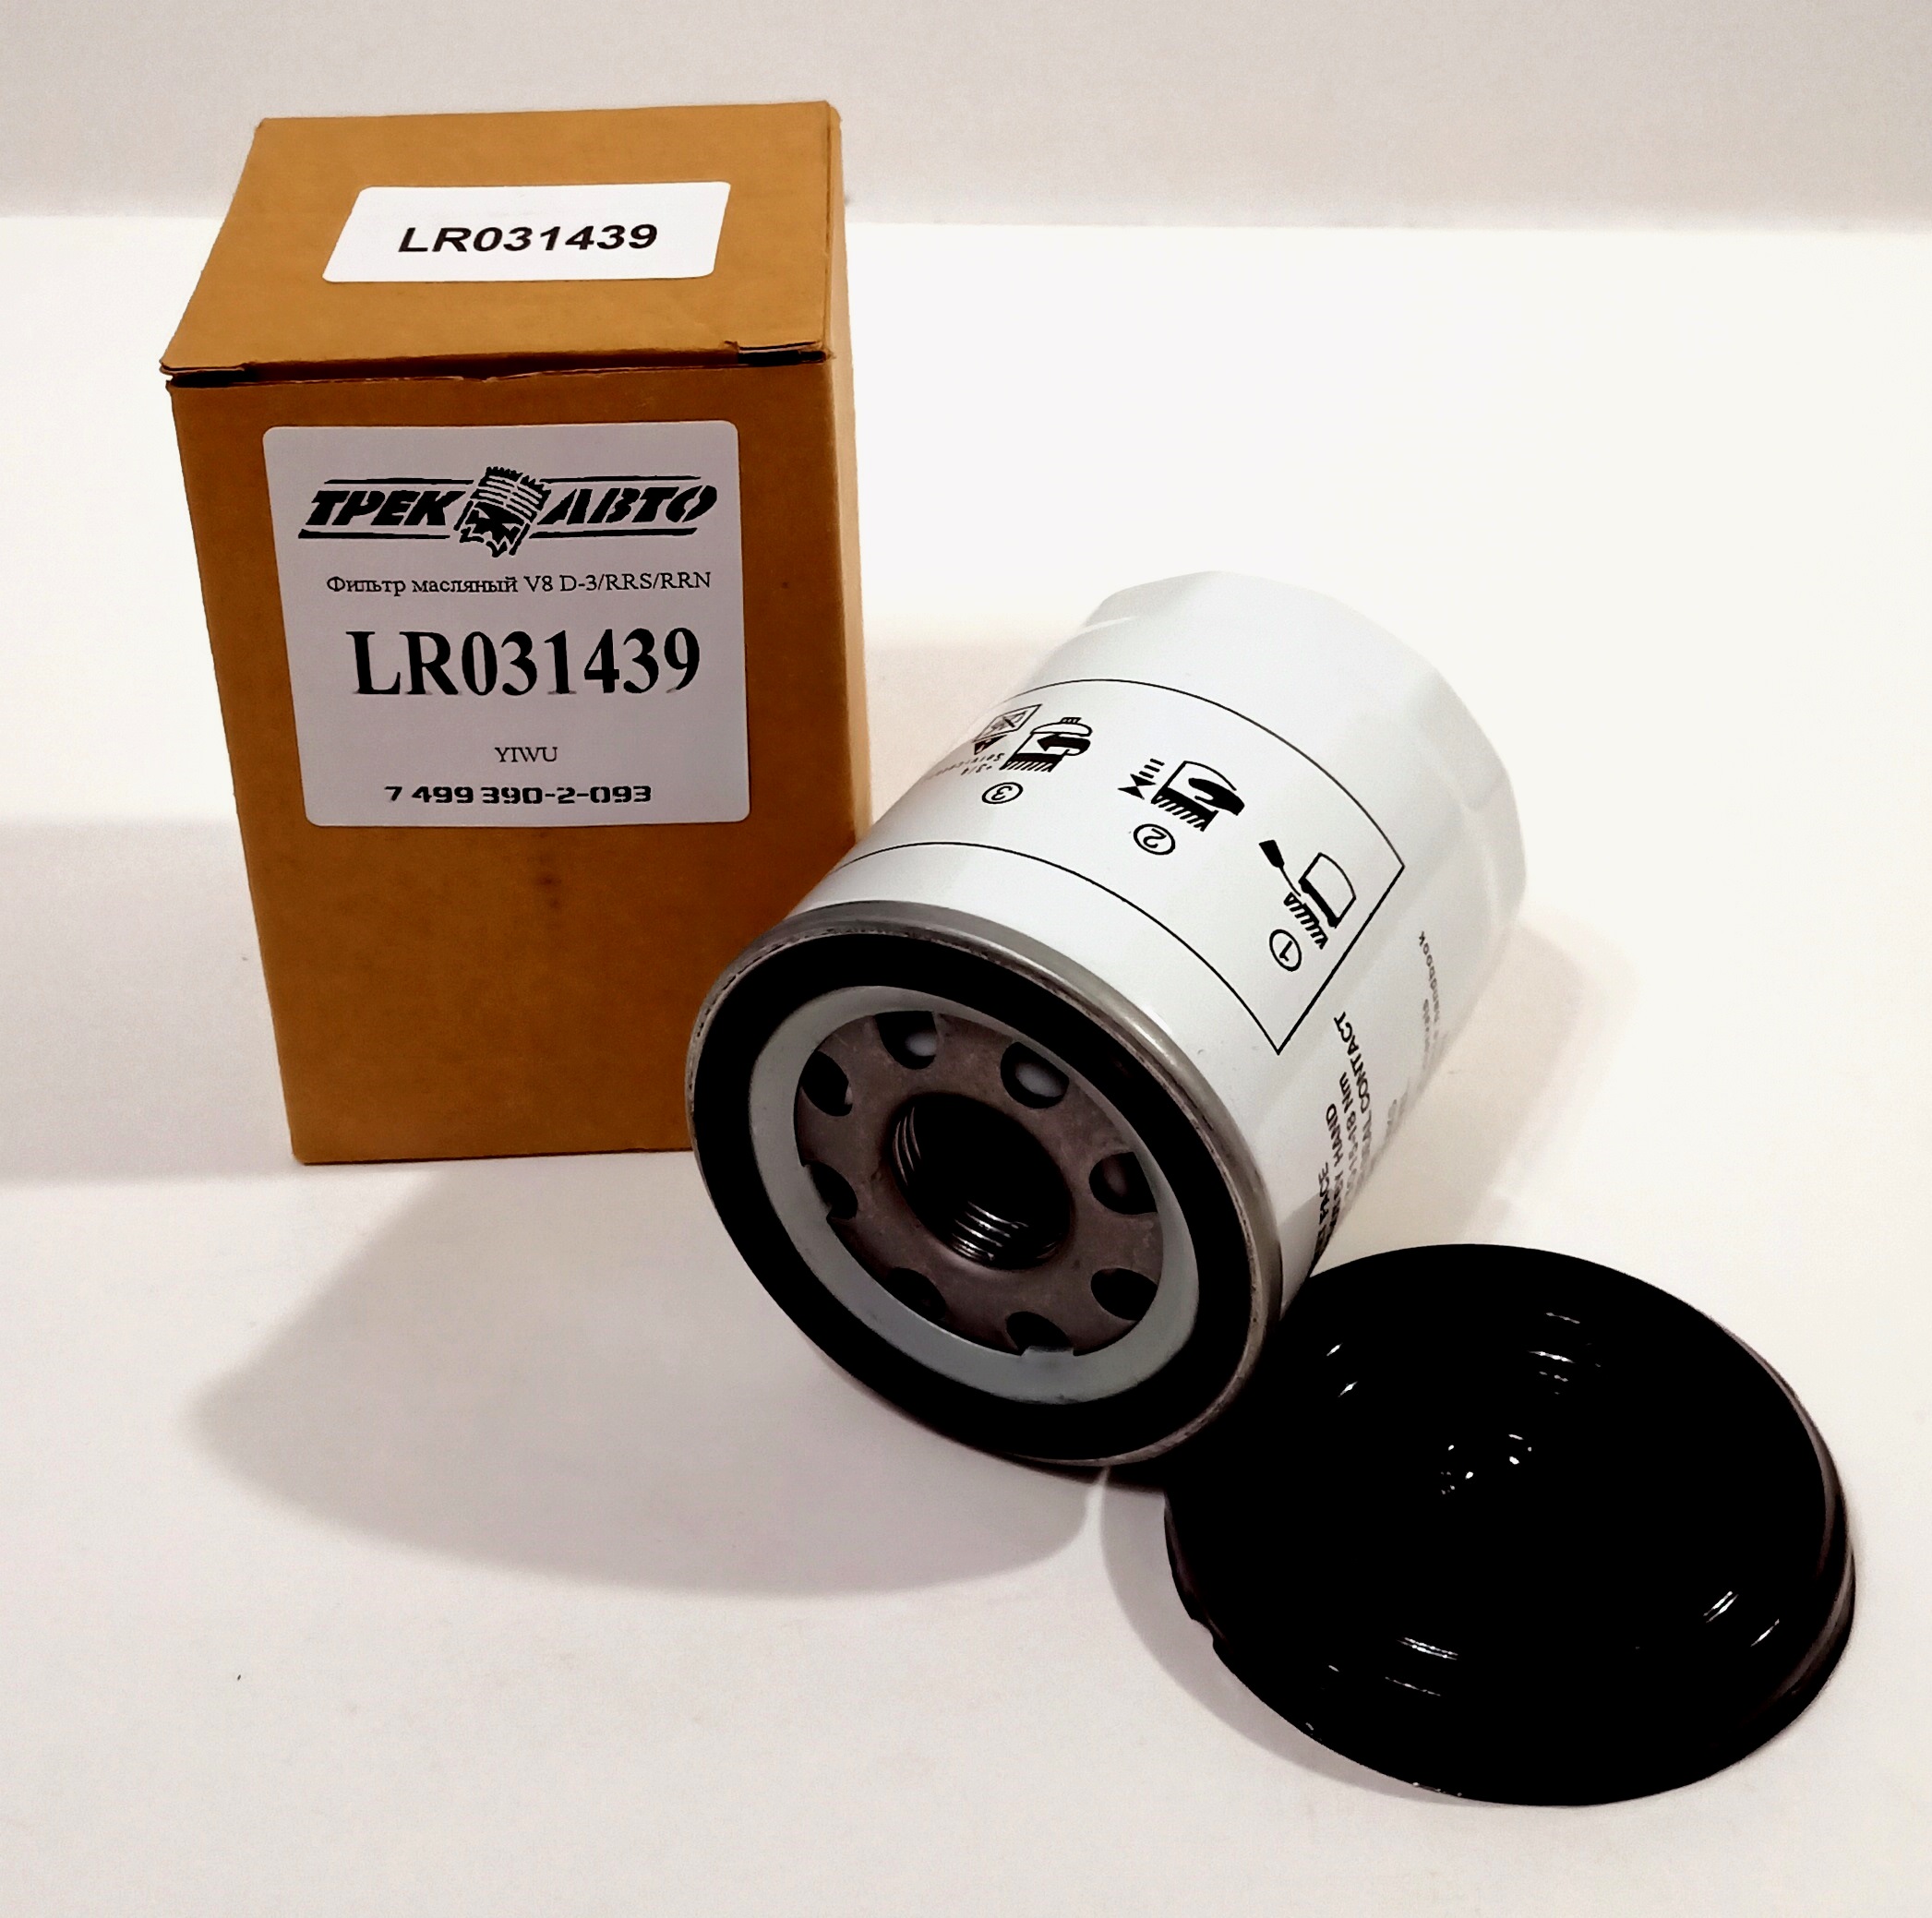 Фильтр масляный V8 D-3/RRS/RRN (LR031439||YIWU)